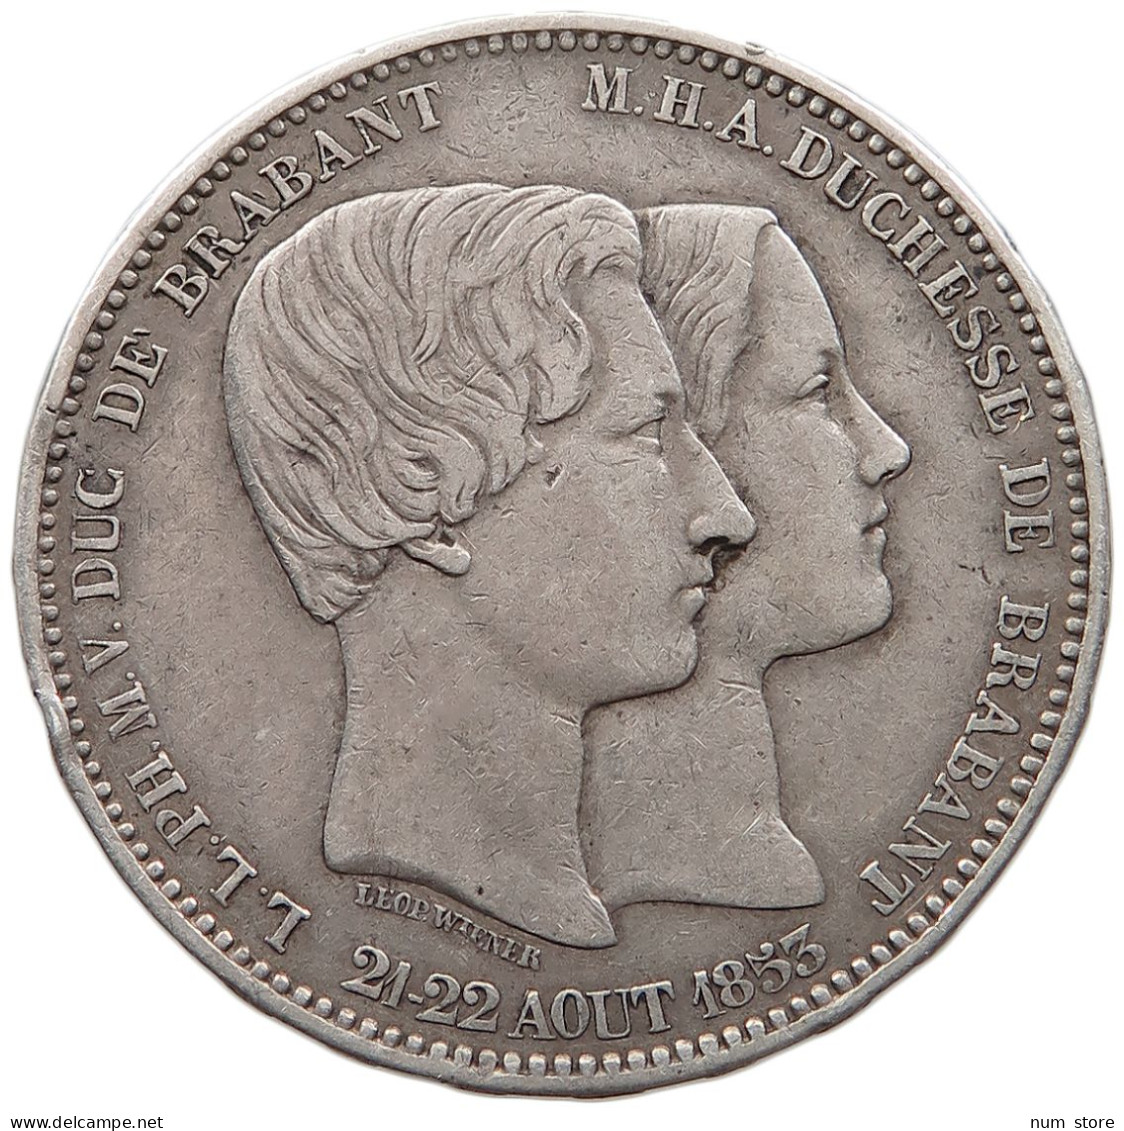 BELGIUM 5 FRANCS 1853 Leopold I. (1831-1865) #t159 0179 - 5 Francs